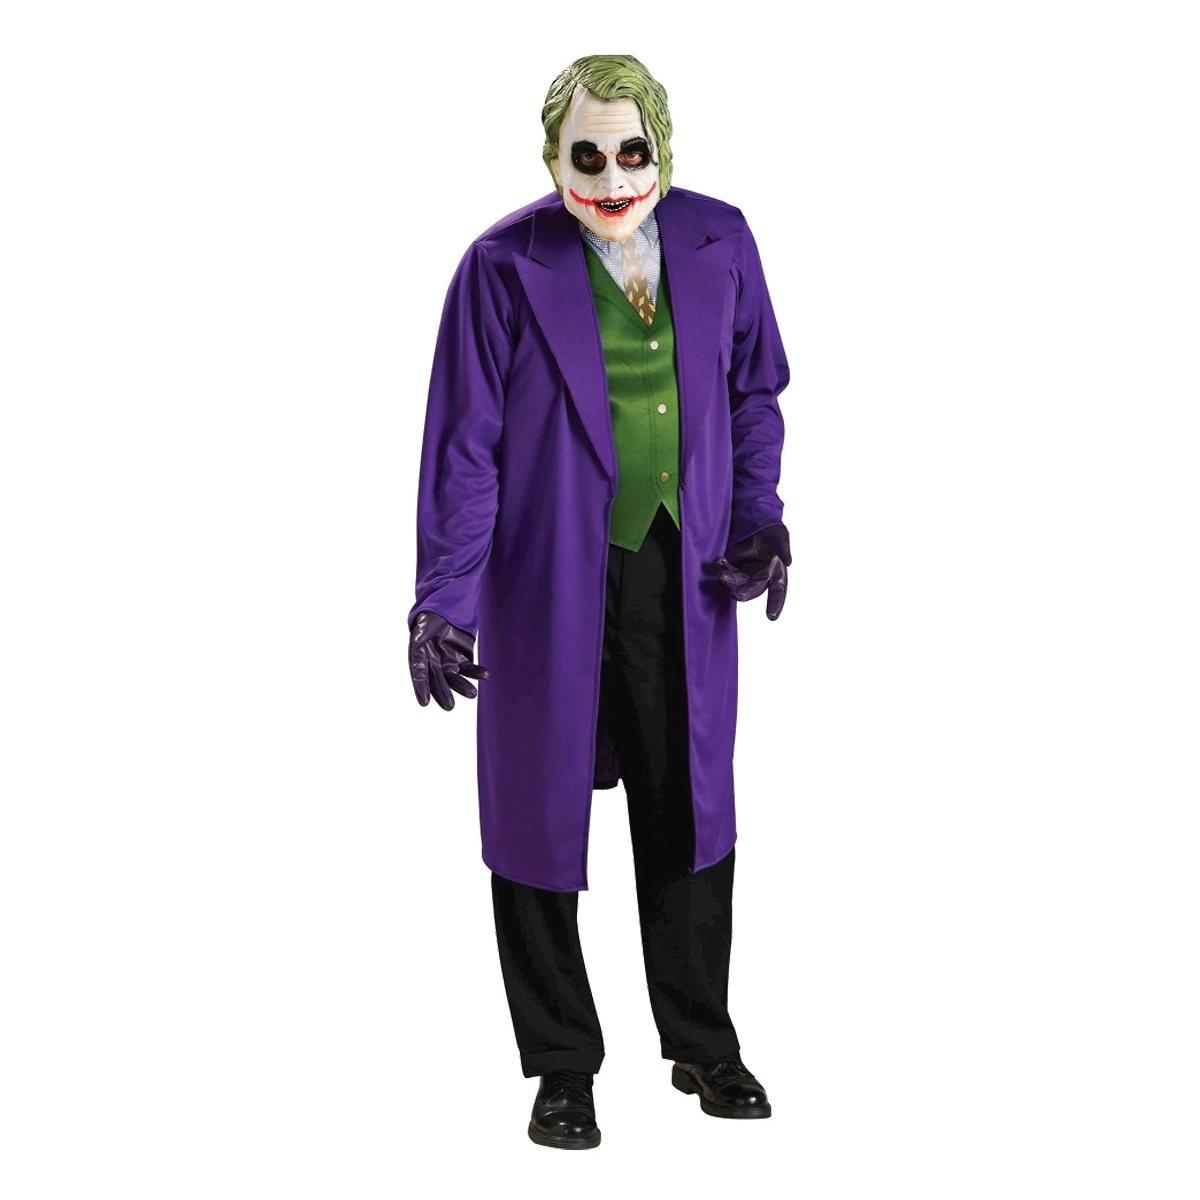 M2 store Costume Joker 883028863105 2208220000048